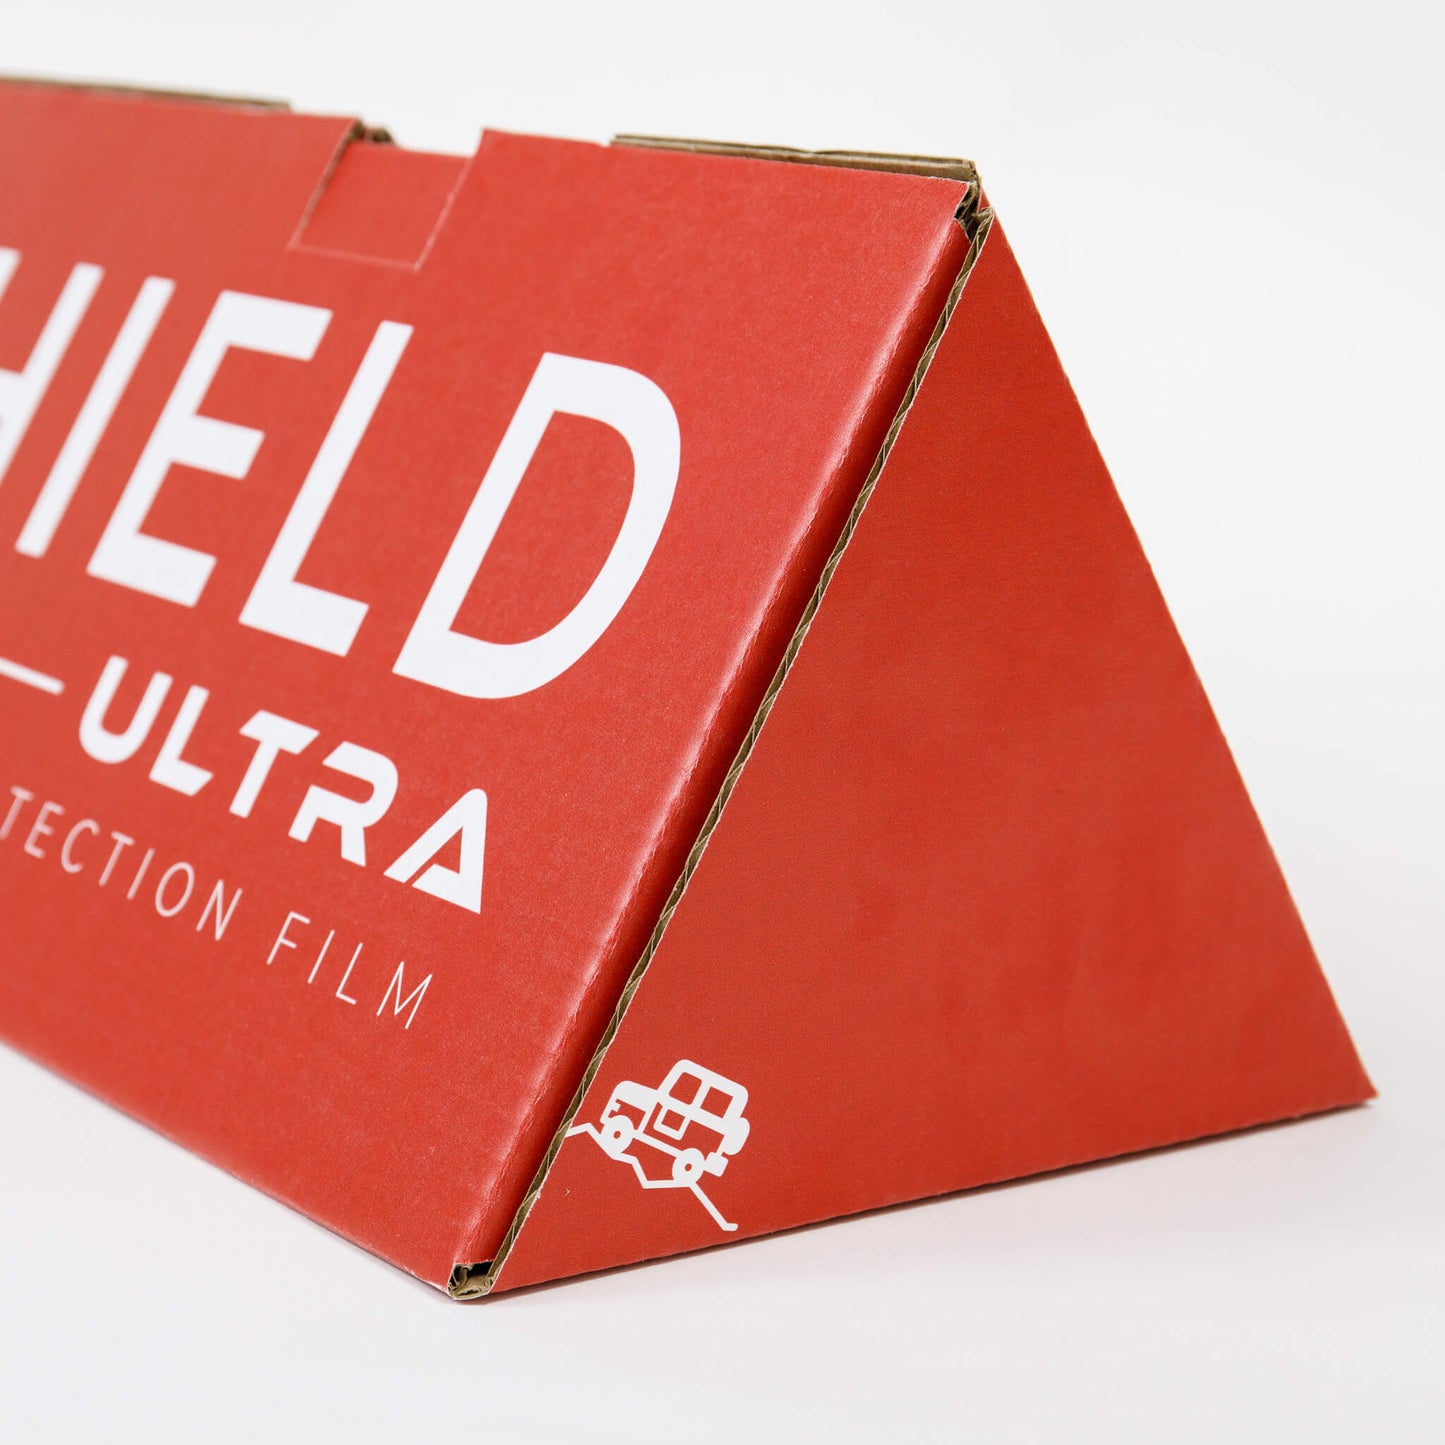 Jeep Wrangler (JK) DIY Windshield Protection Film Kit